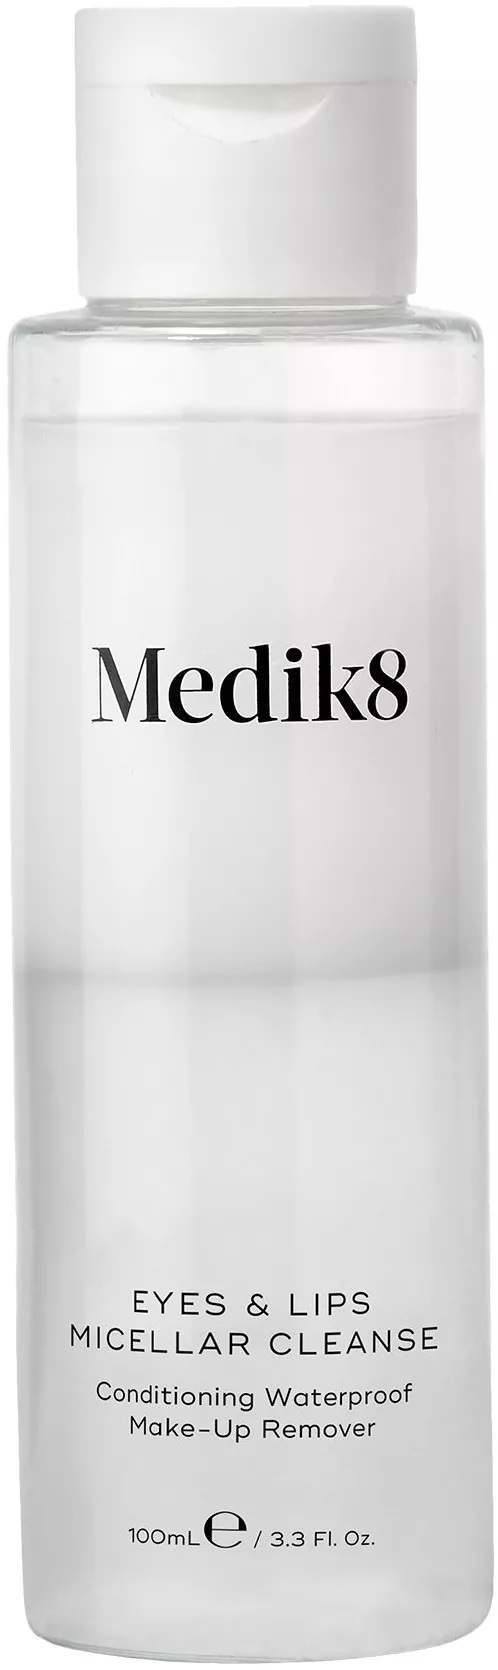 Levně Medik8 Micelární odličovač make-upu Eyes & Lips Micellar Cleanse (Conditioning Waterproof Make-up Remover) 100 ml